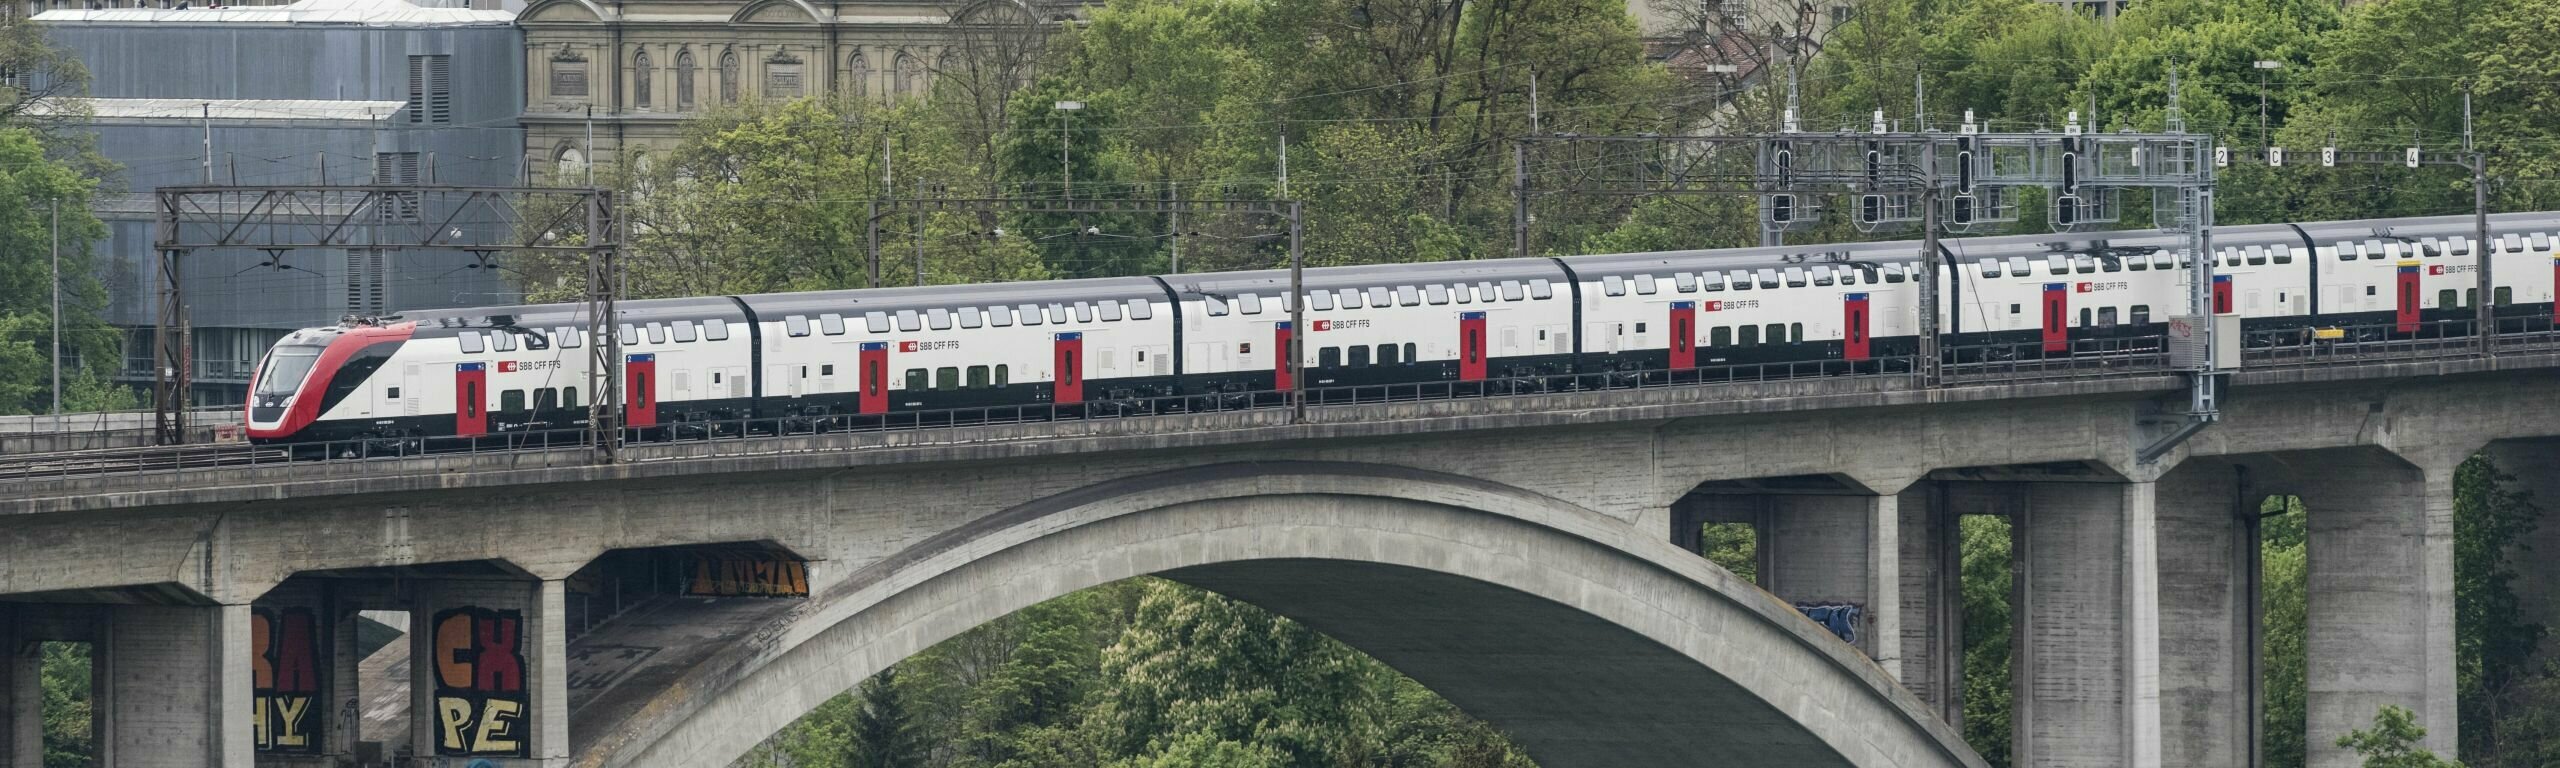 Zug im Bahnhof Bern mit Bundeshaus im Hintergrund